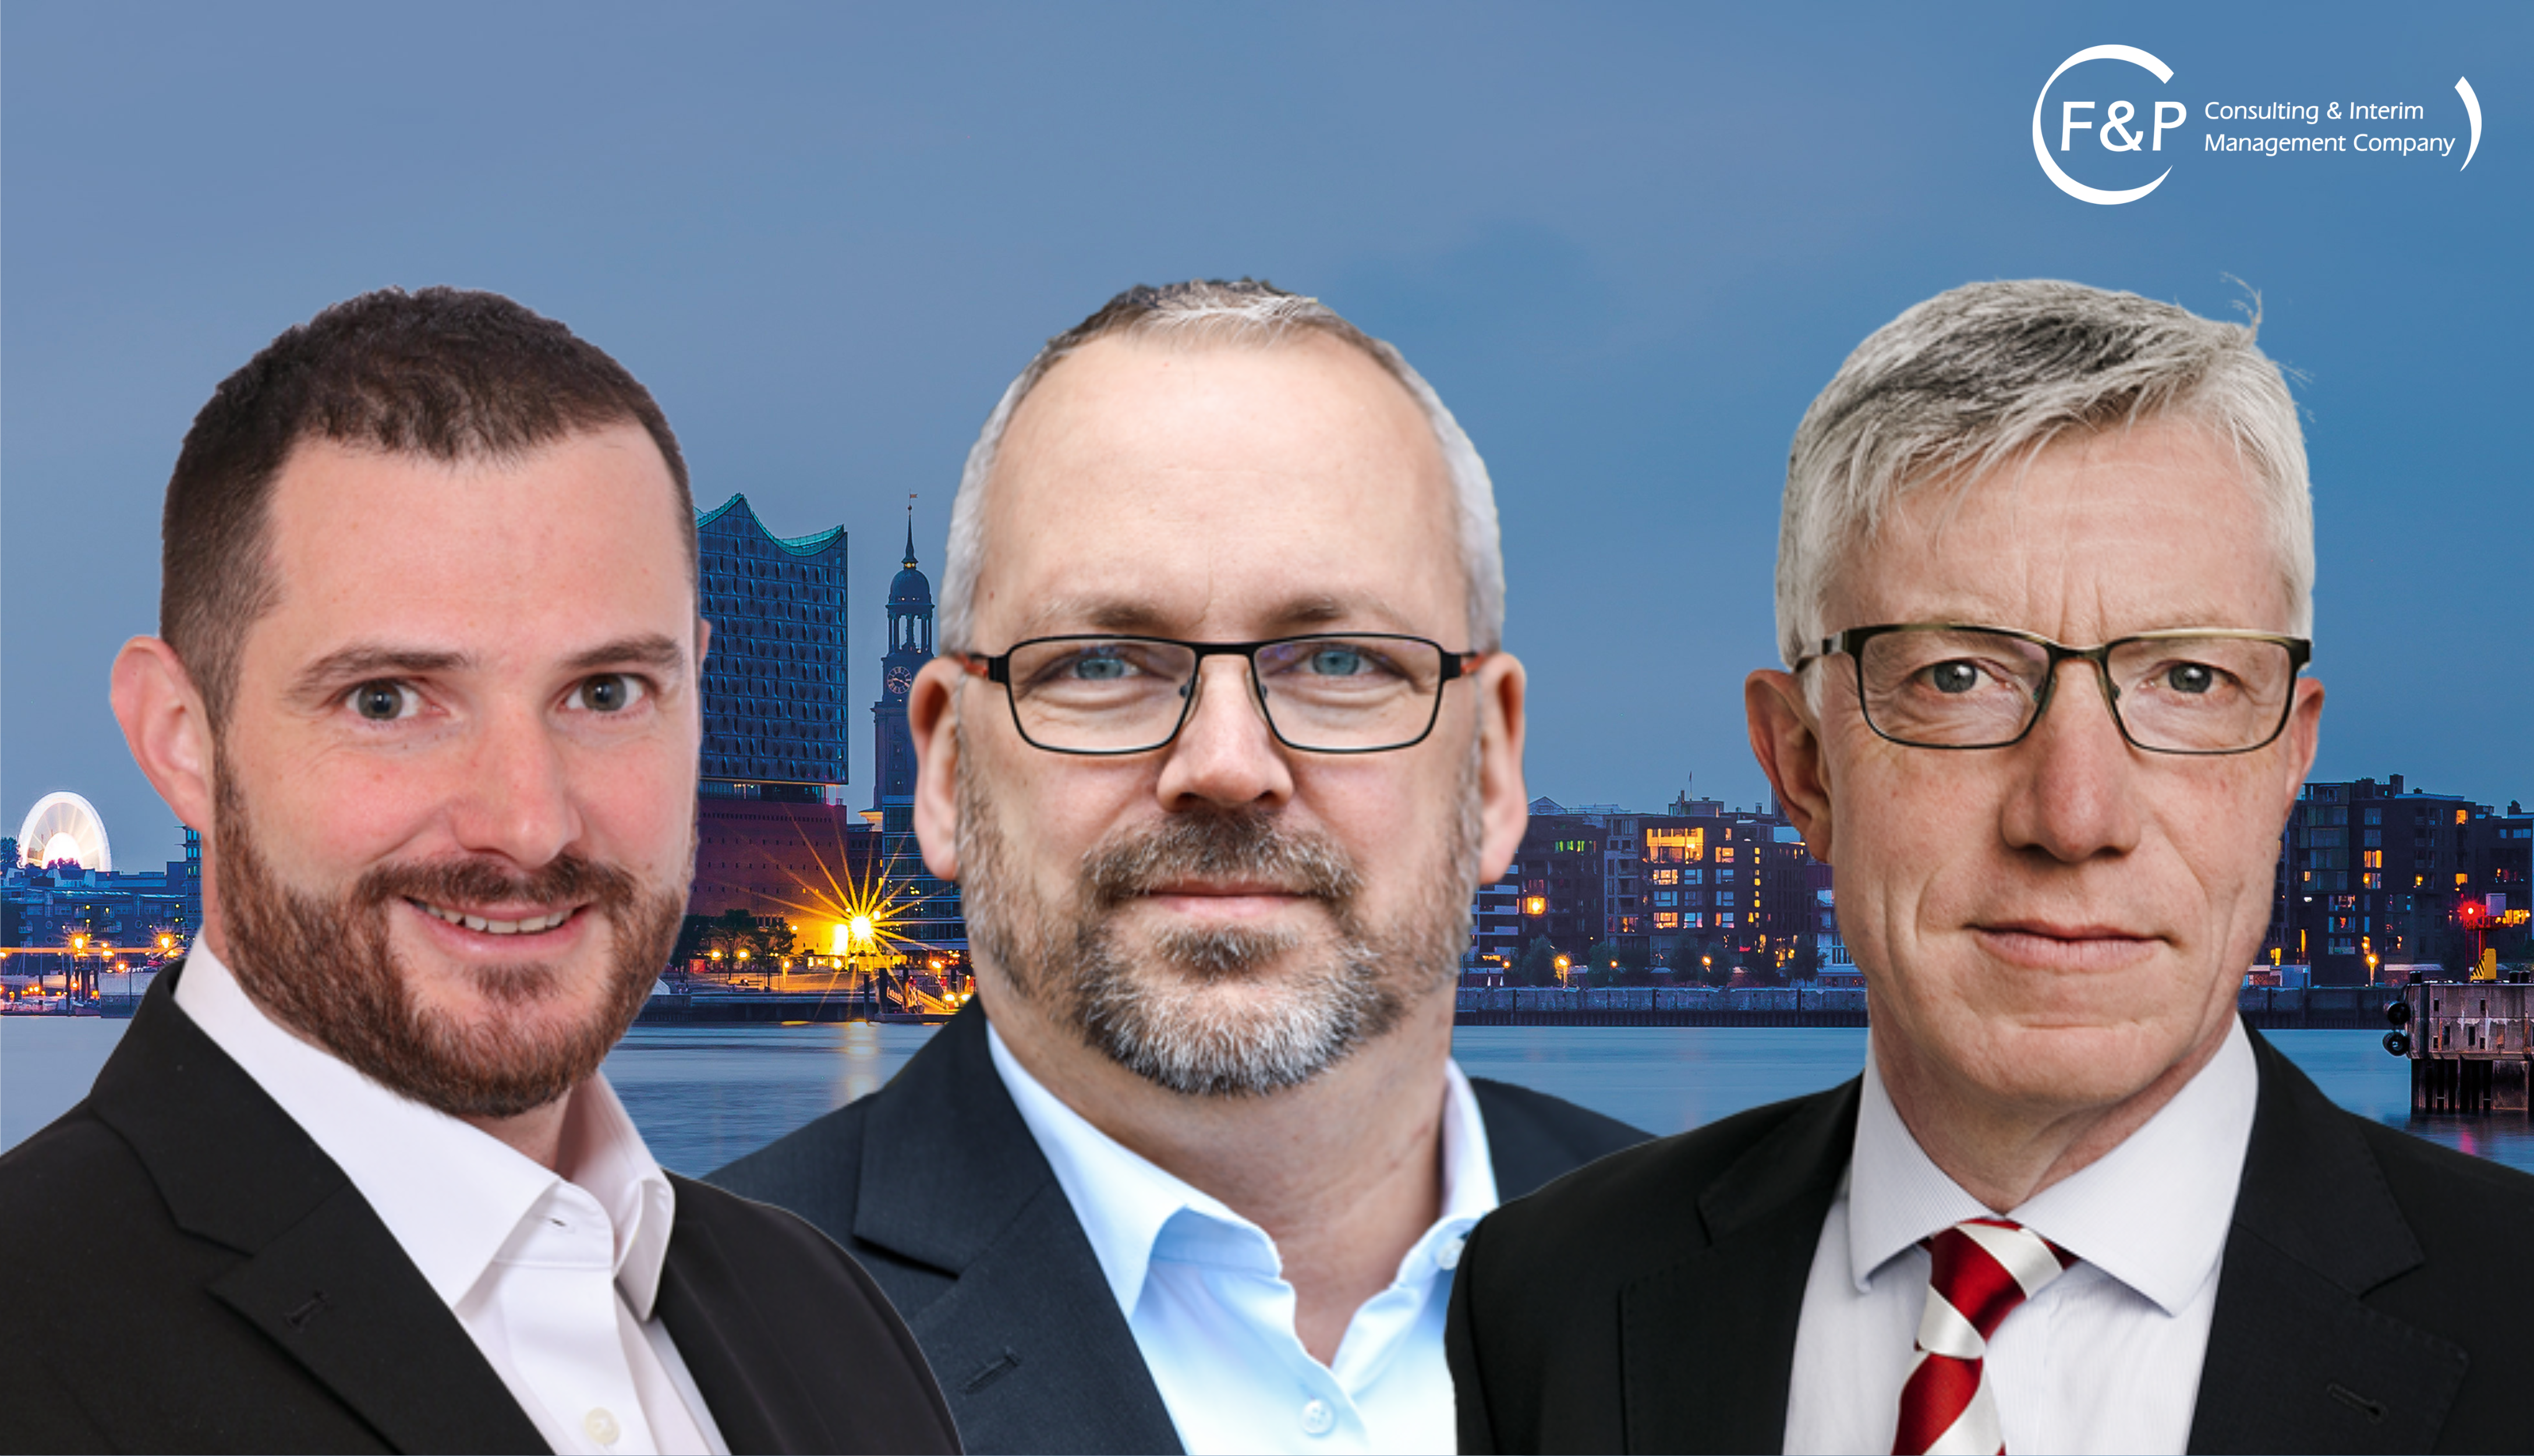 Vorstellung als neue Senior Partner - Tobias Reichert, Sascha Stockfisch, Johannes Graf von Spee